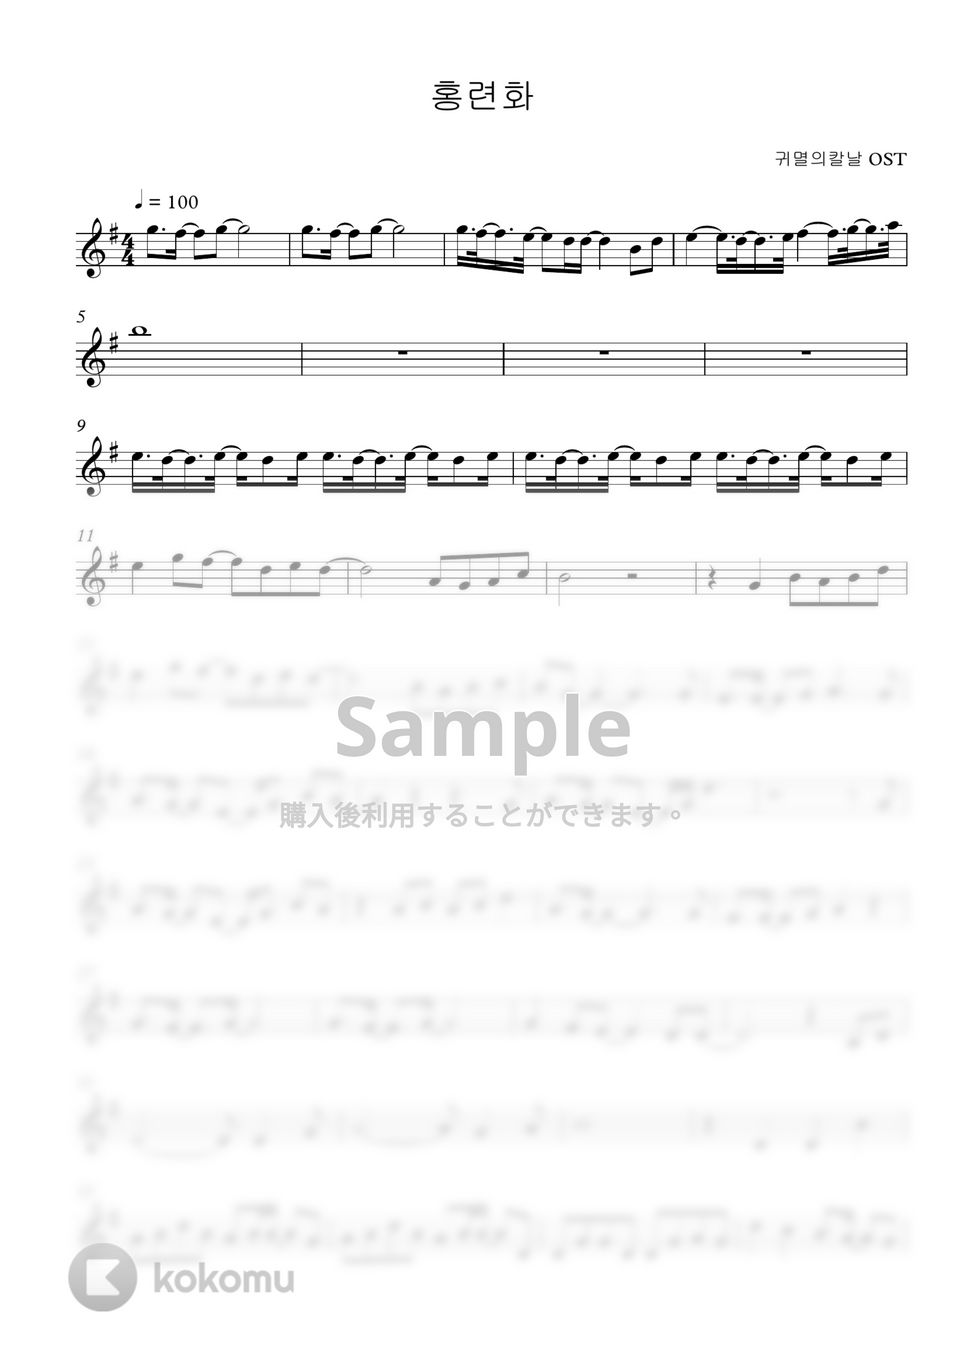 鬼滅の刃 OST - 紅蓮花 (Calm piano ver.🎹) by PARK- DDOK DDOK